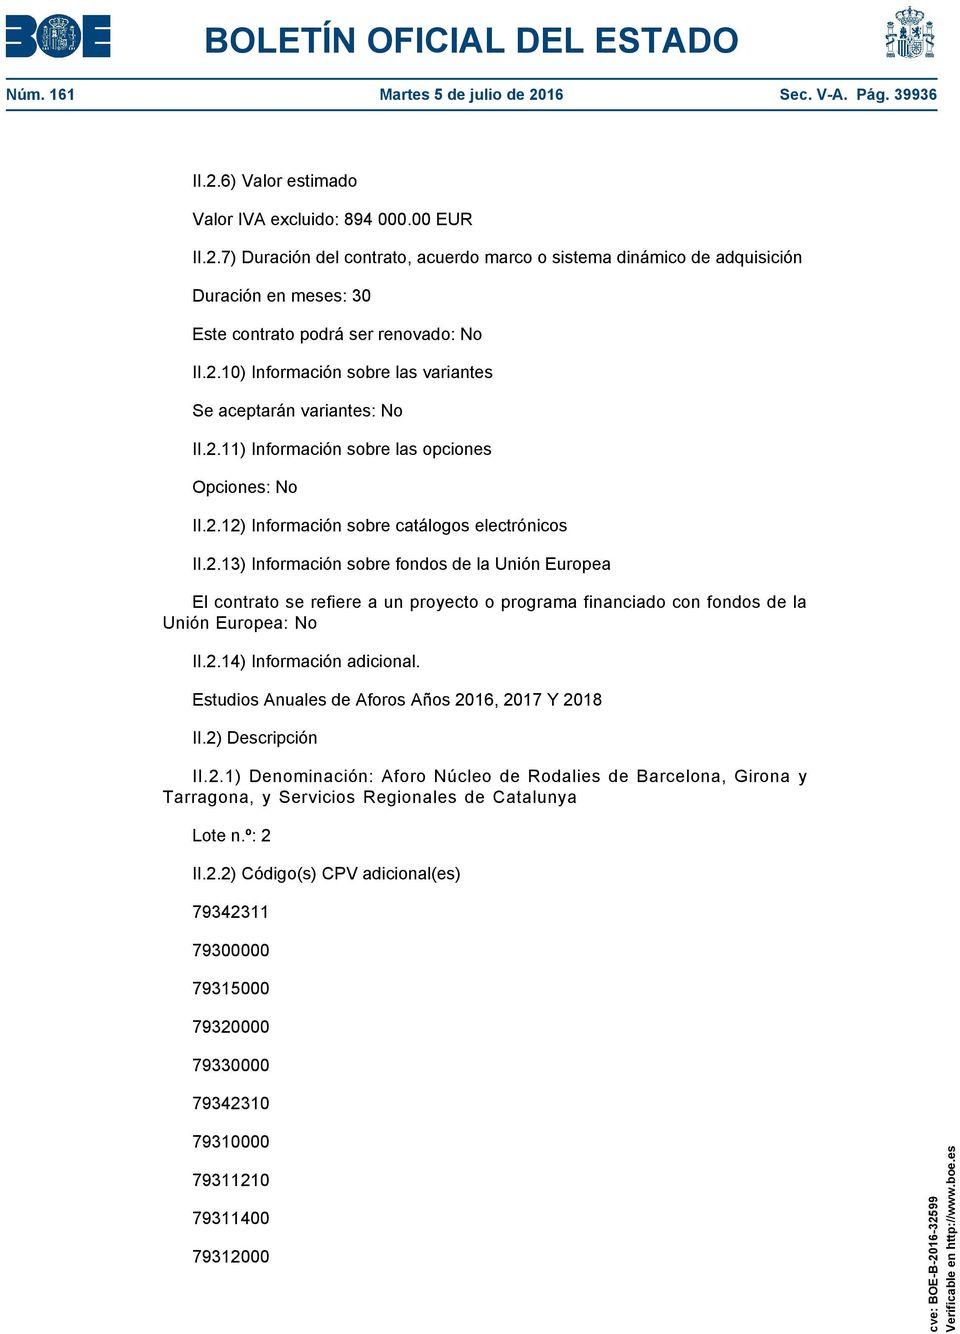 2.14) Información adicional. Estudios Anuales de Aforos Años 2016, 2017 Y 2018 II.2) Descripción II.2.1) Denominación: Aforo Núcleo de Rodalies de Barcelona, Girona y Tarragona, y Servicios Regionales de Catalunya Lote n.